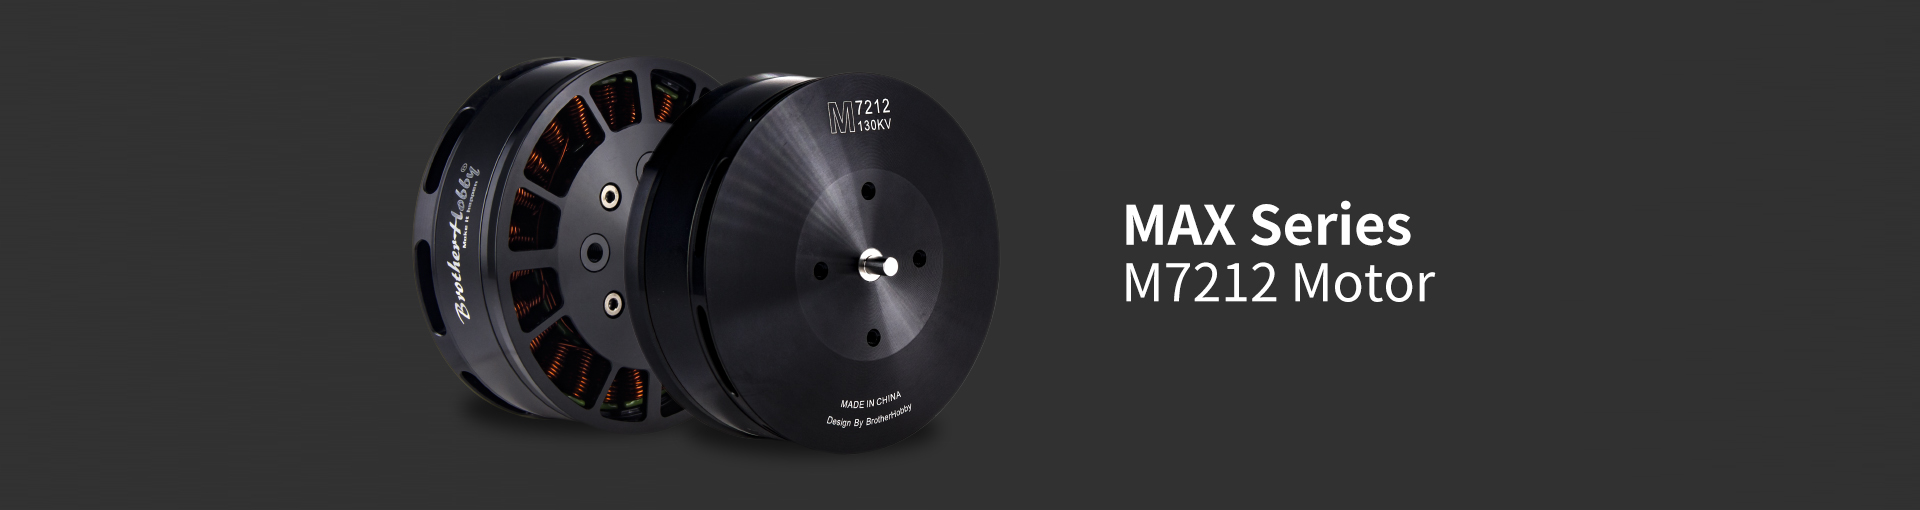 Max M7212 Motor